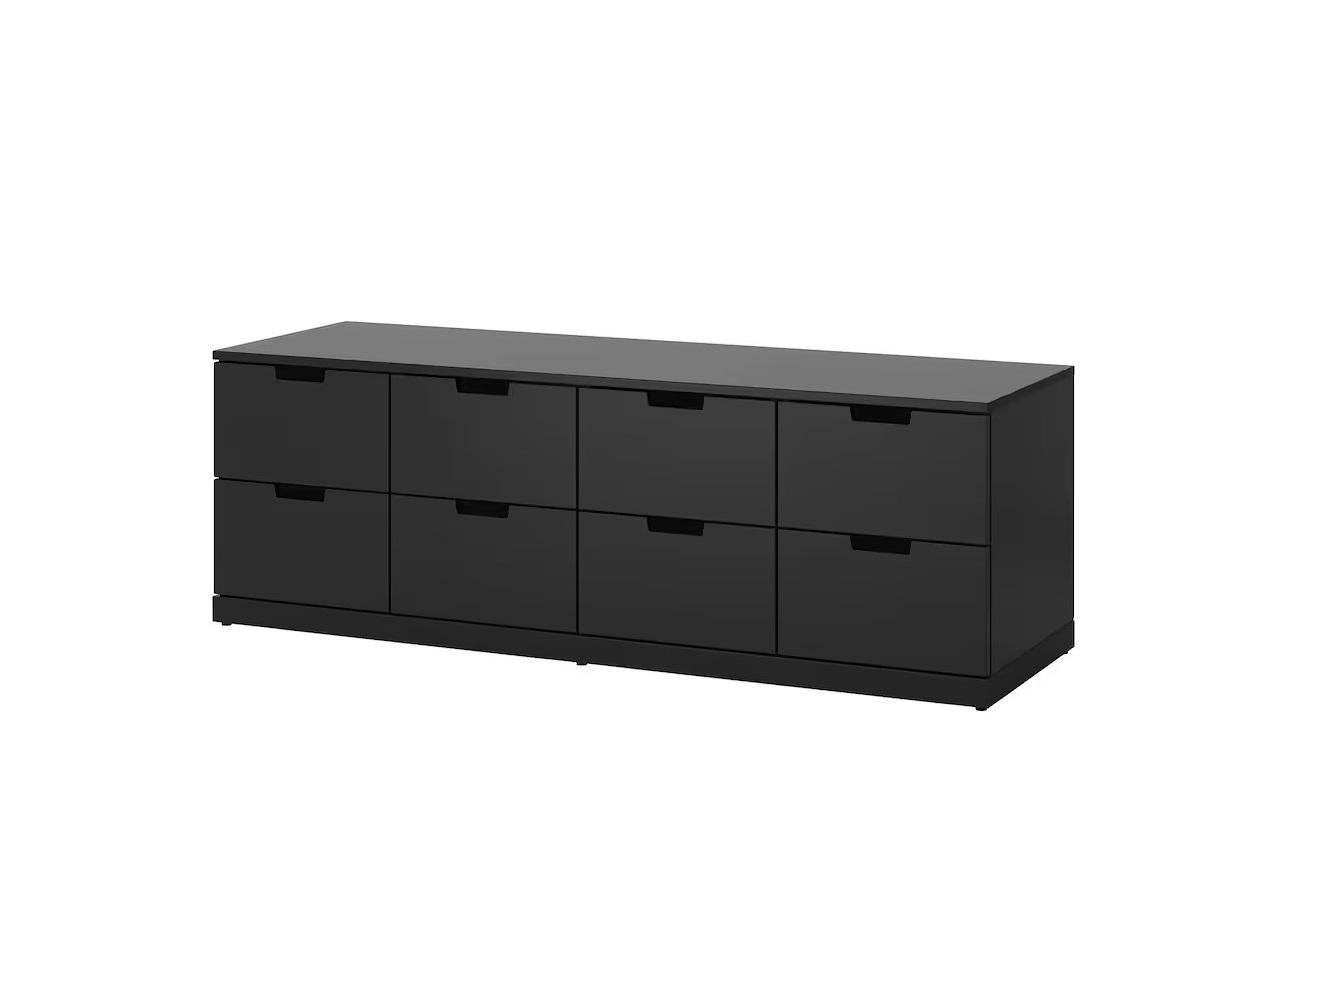 Комод Нордли 24 black ИКЕА (IKEA) изображение товара